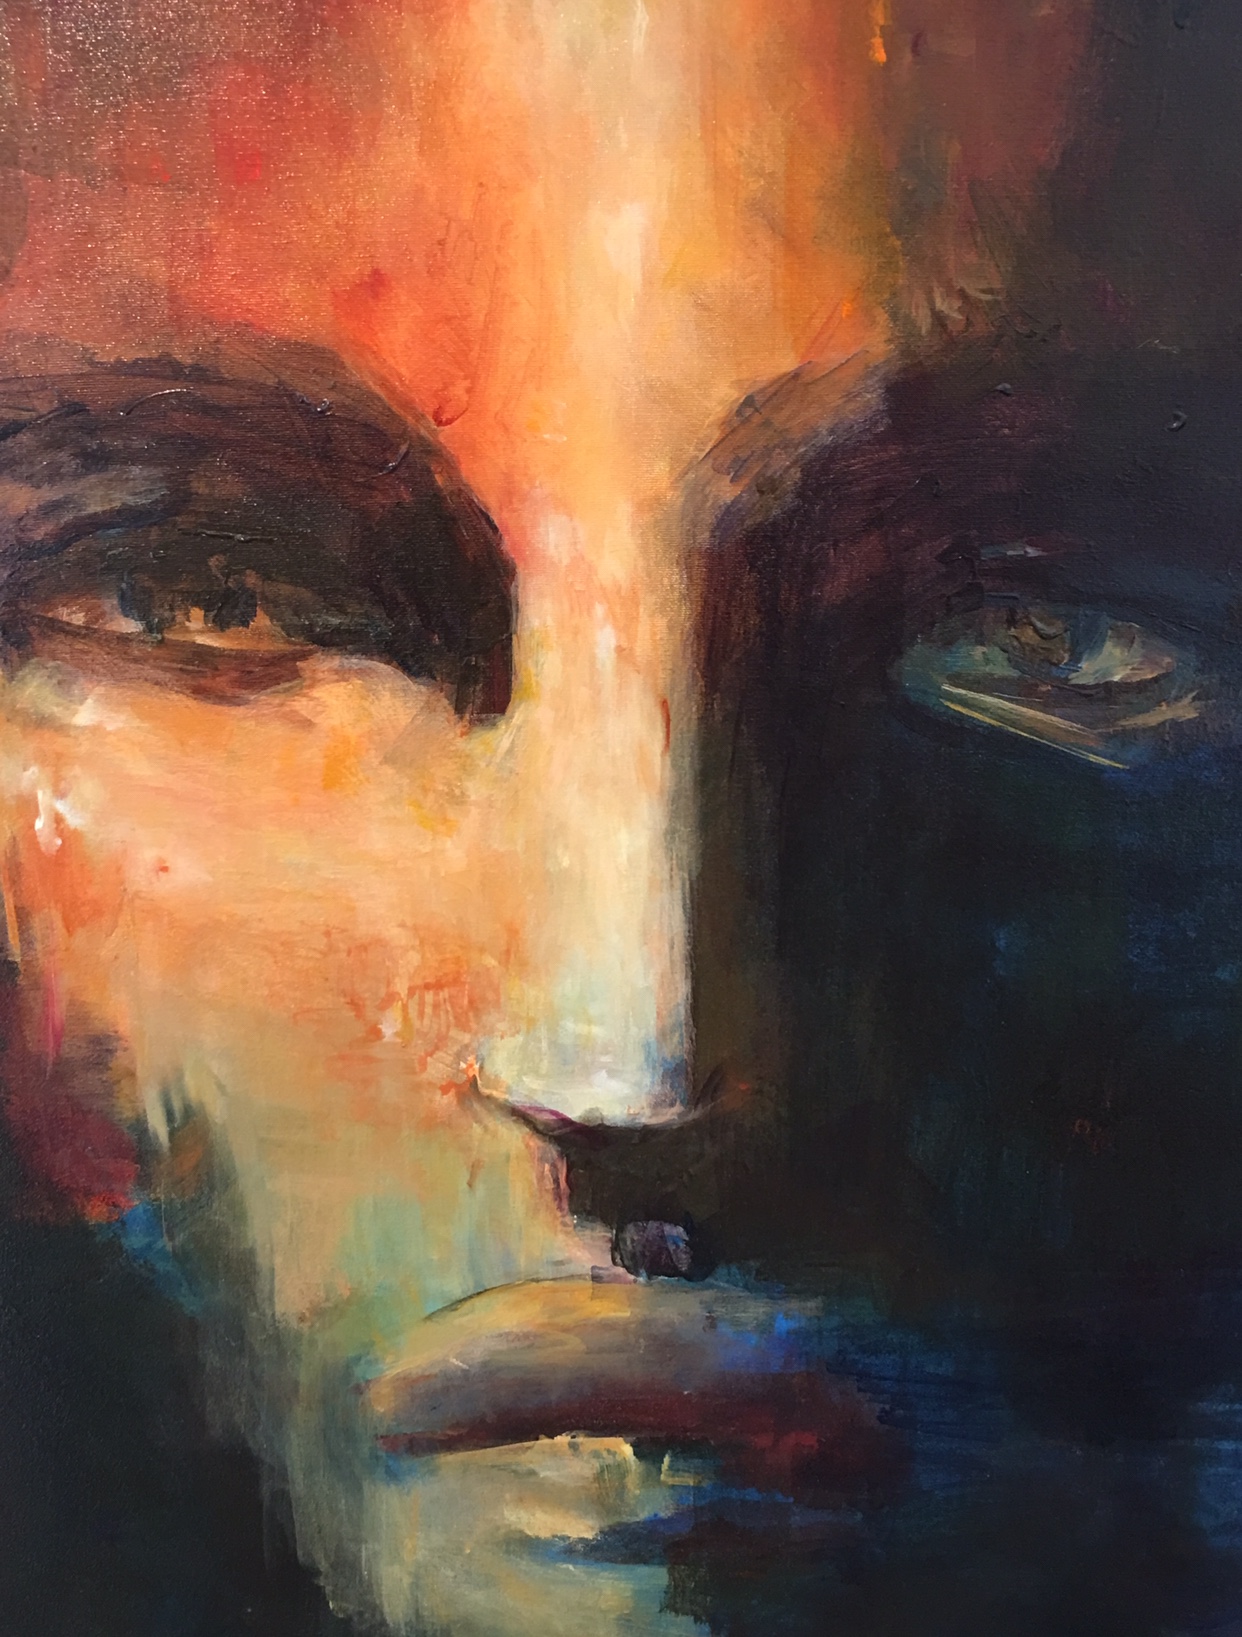 Une peinture à l'huile captivante représentant un visage d'homme par Micheline Bourque.